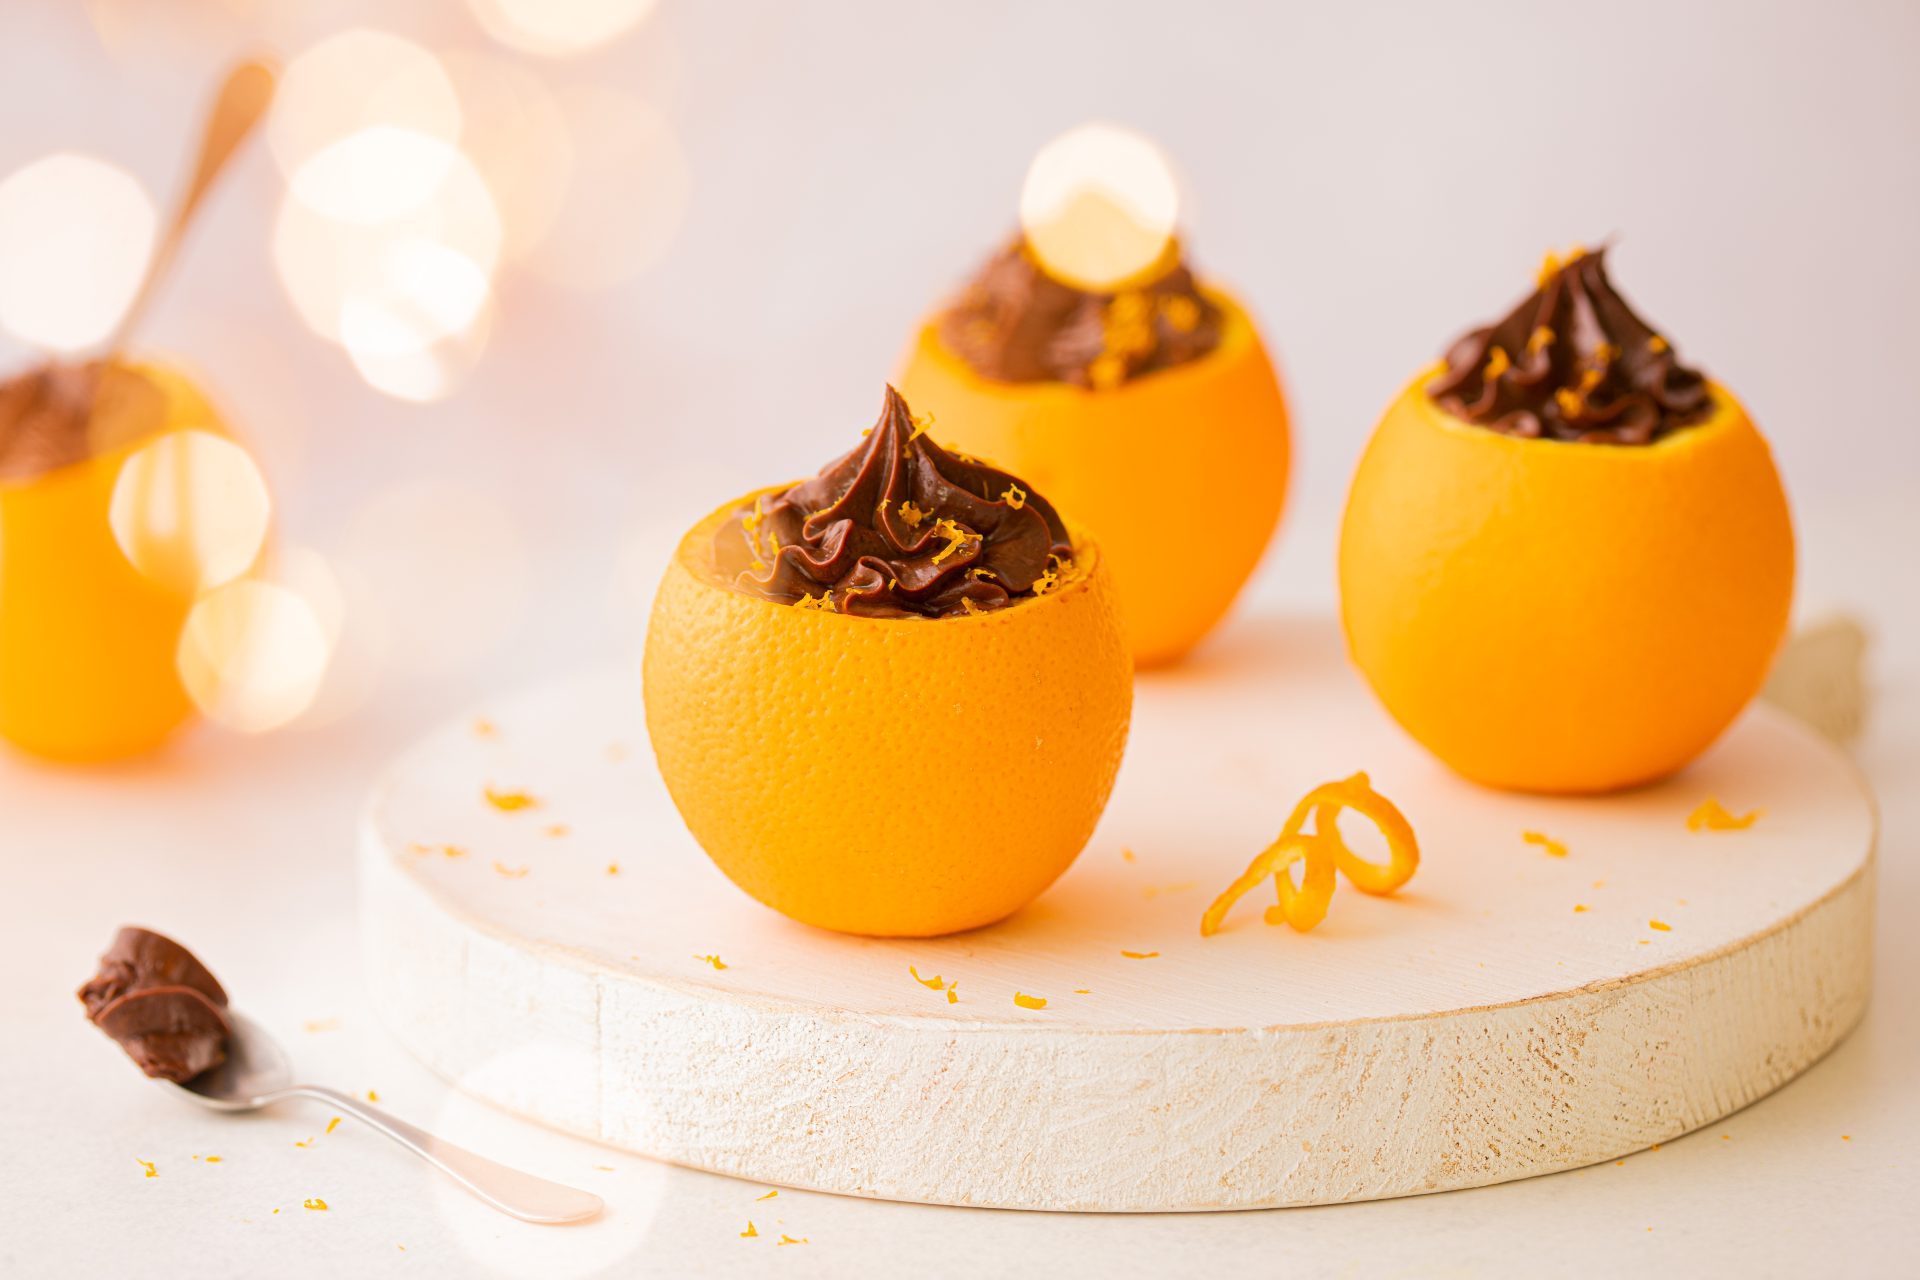 Mousse au chocolat en coque d'orange : Découvrez nos recettes